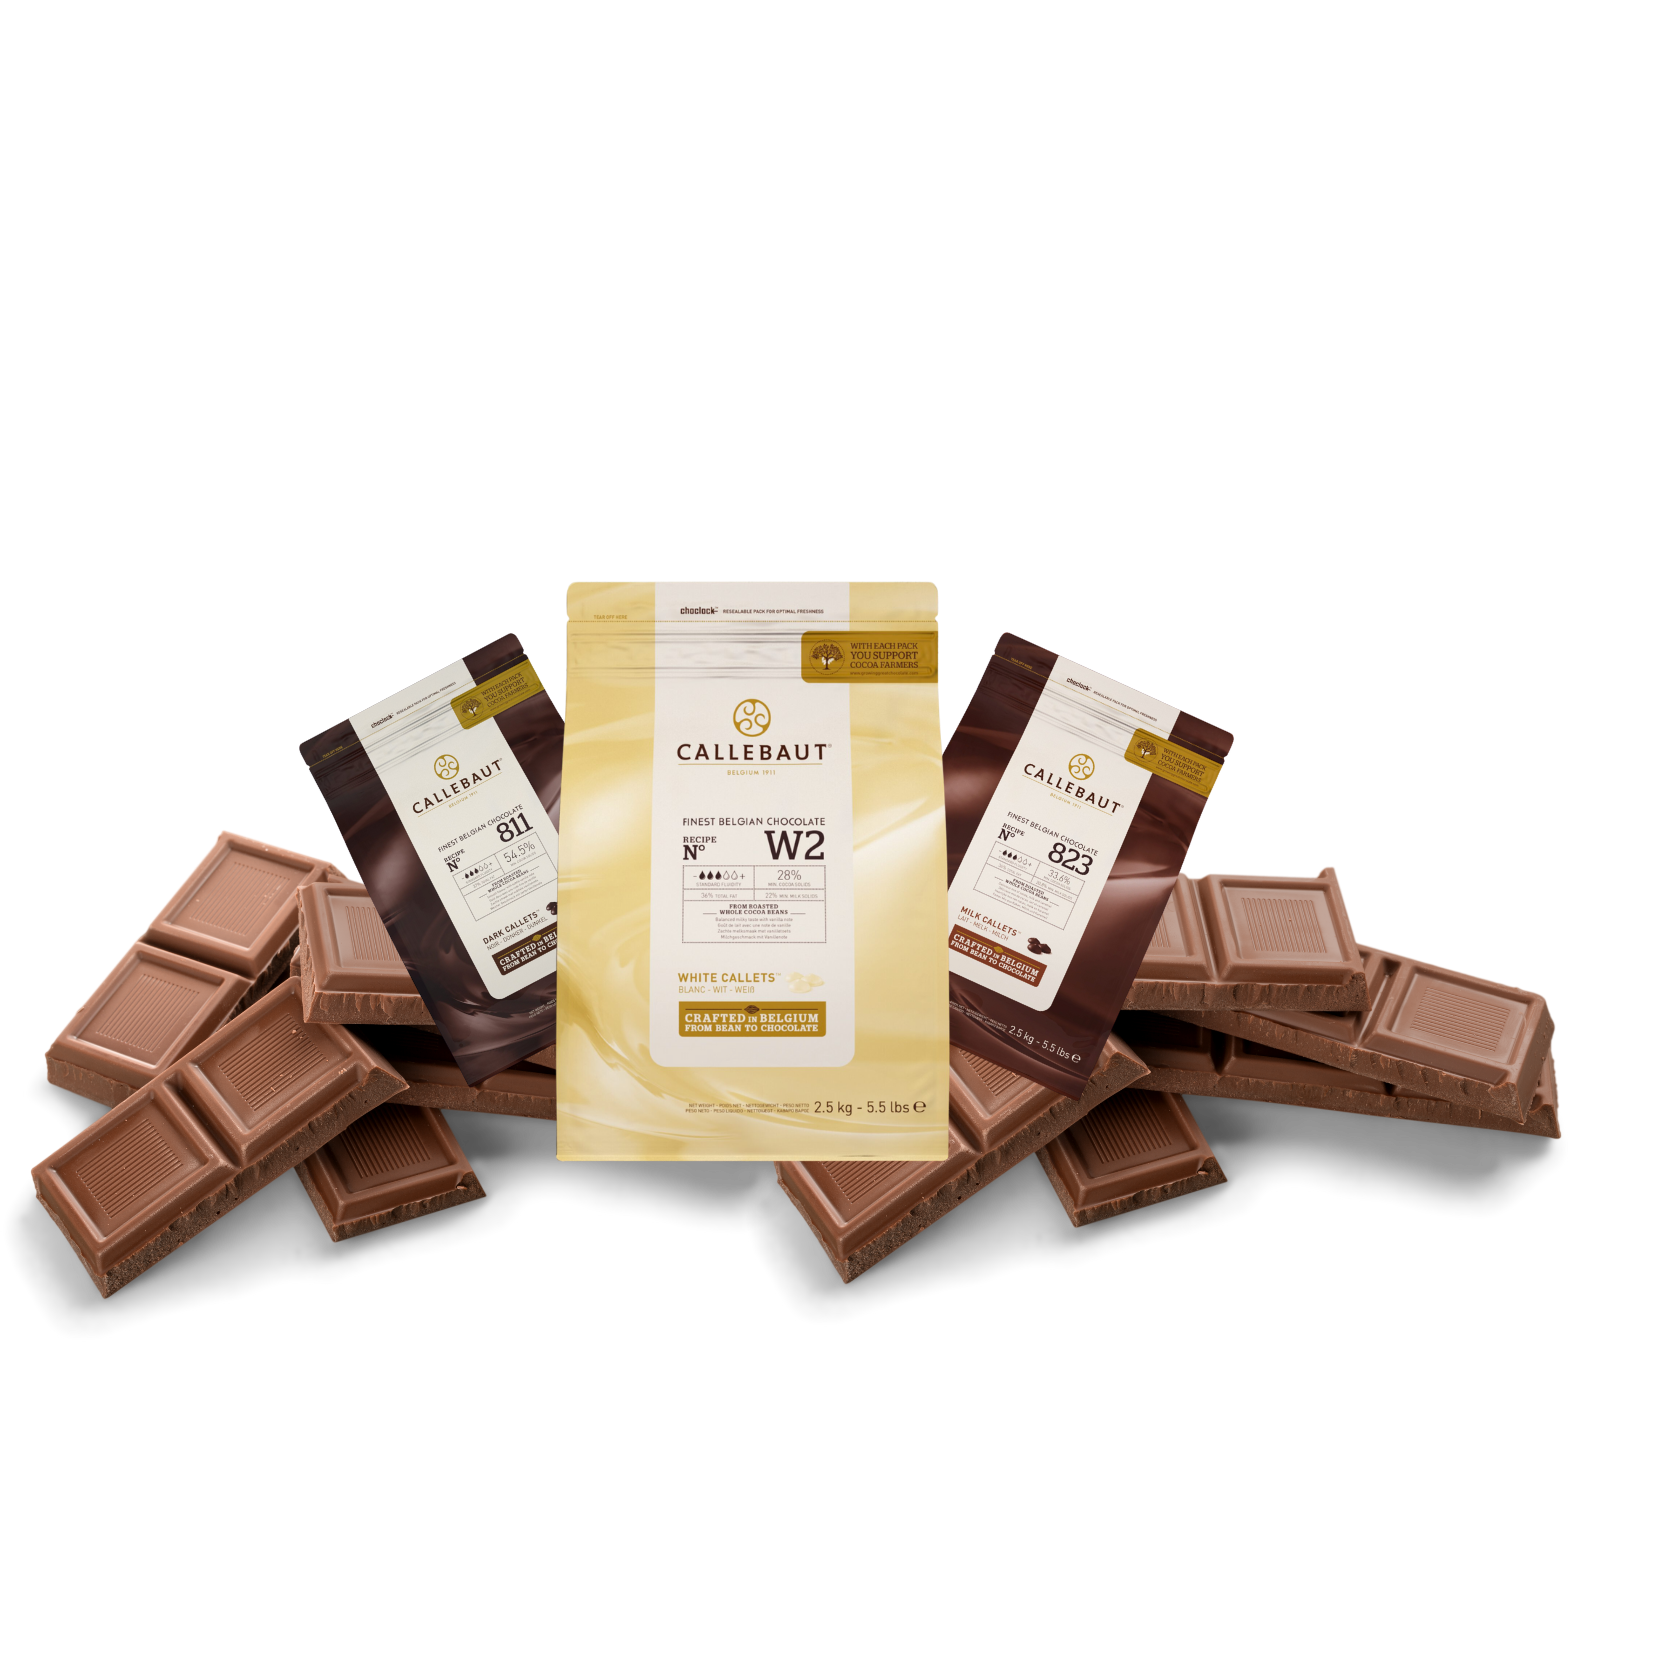 Callebaut Chocolate - Finest Baking Chocolate - Buy Milk Chocolate